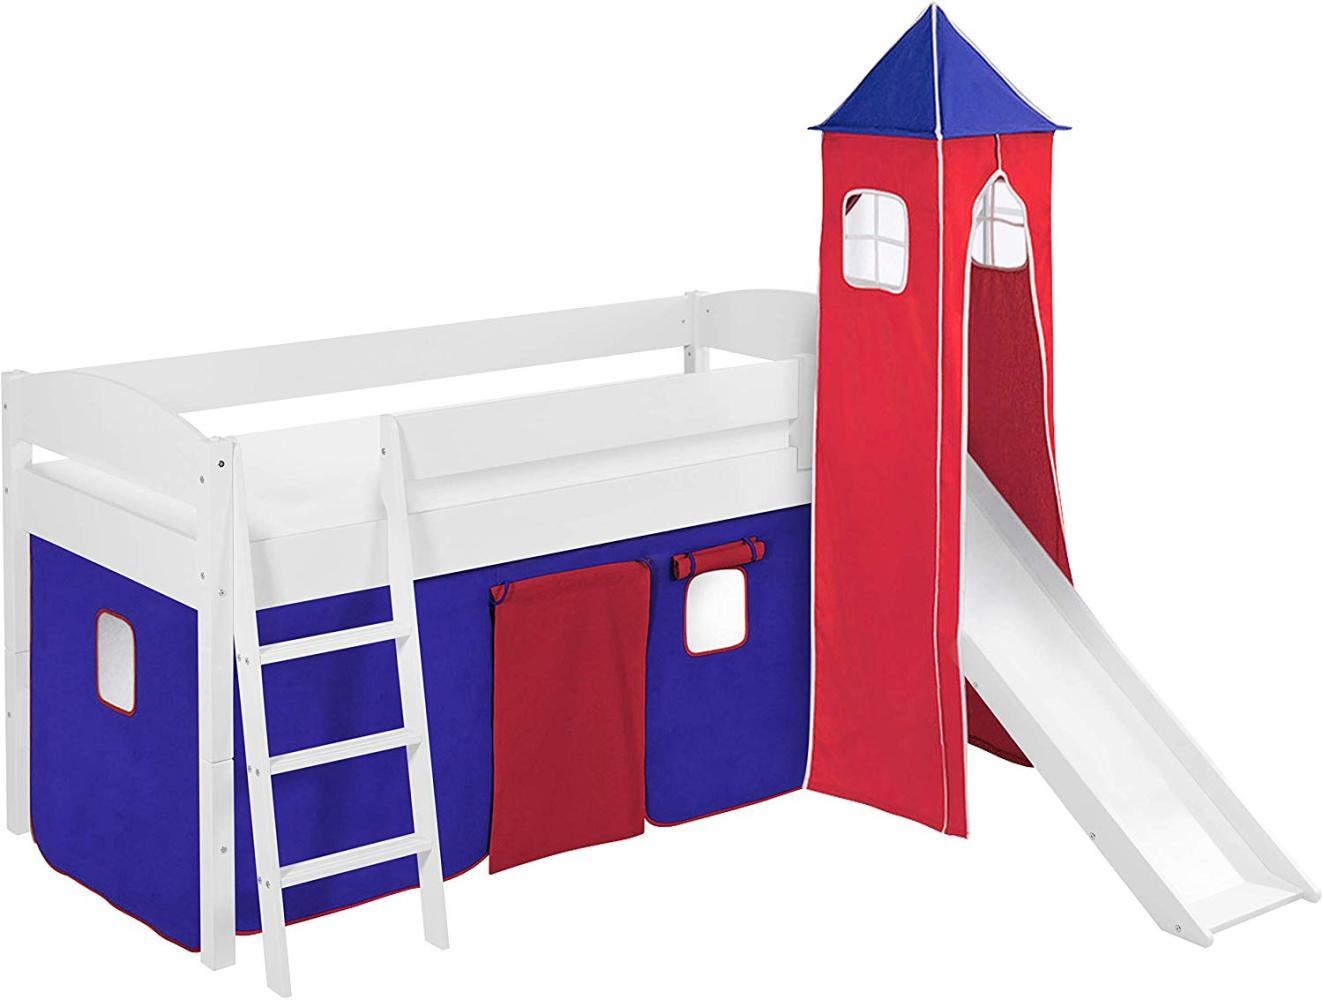 Lilokids 'Ida 4105' Spielbett 90 x 200 cm, Blau Rot, Kiefer massiv, mit Turm, Rutsche und Vorhang Bild 1